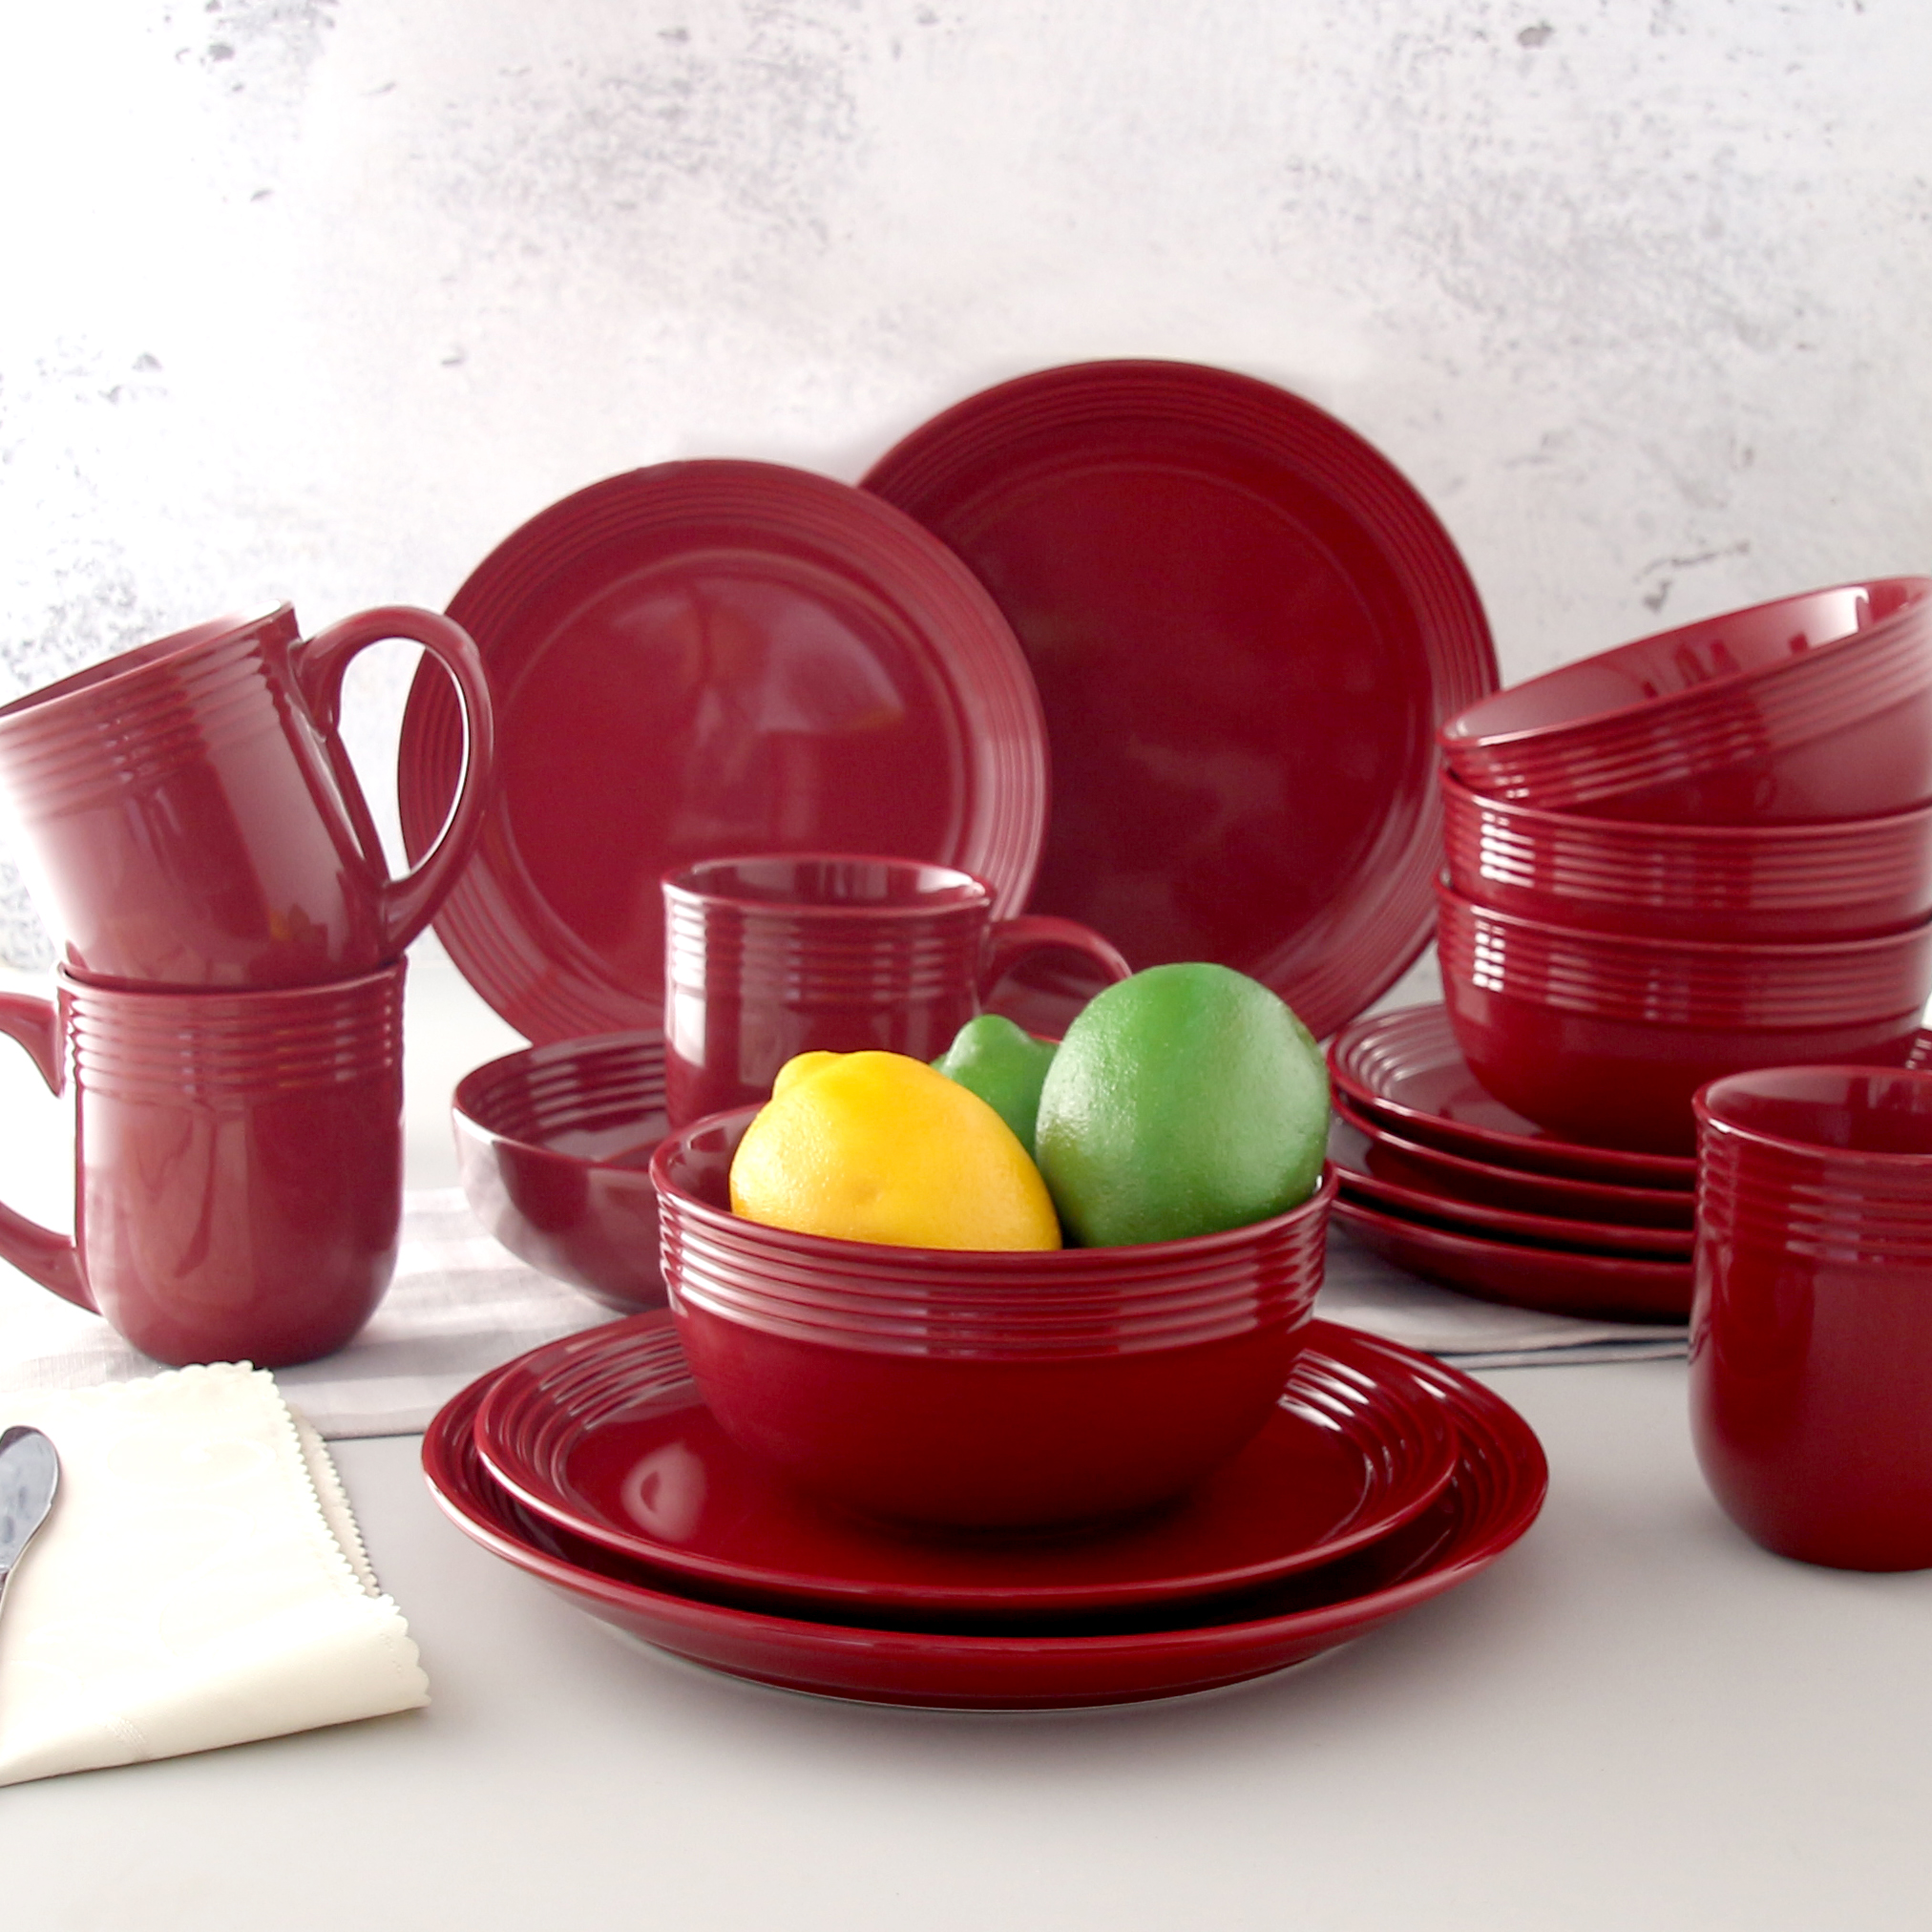 Mainstays Chiara Red Stoneware Dinnerware Set, 16-Pieces - image 3 of 10